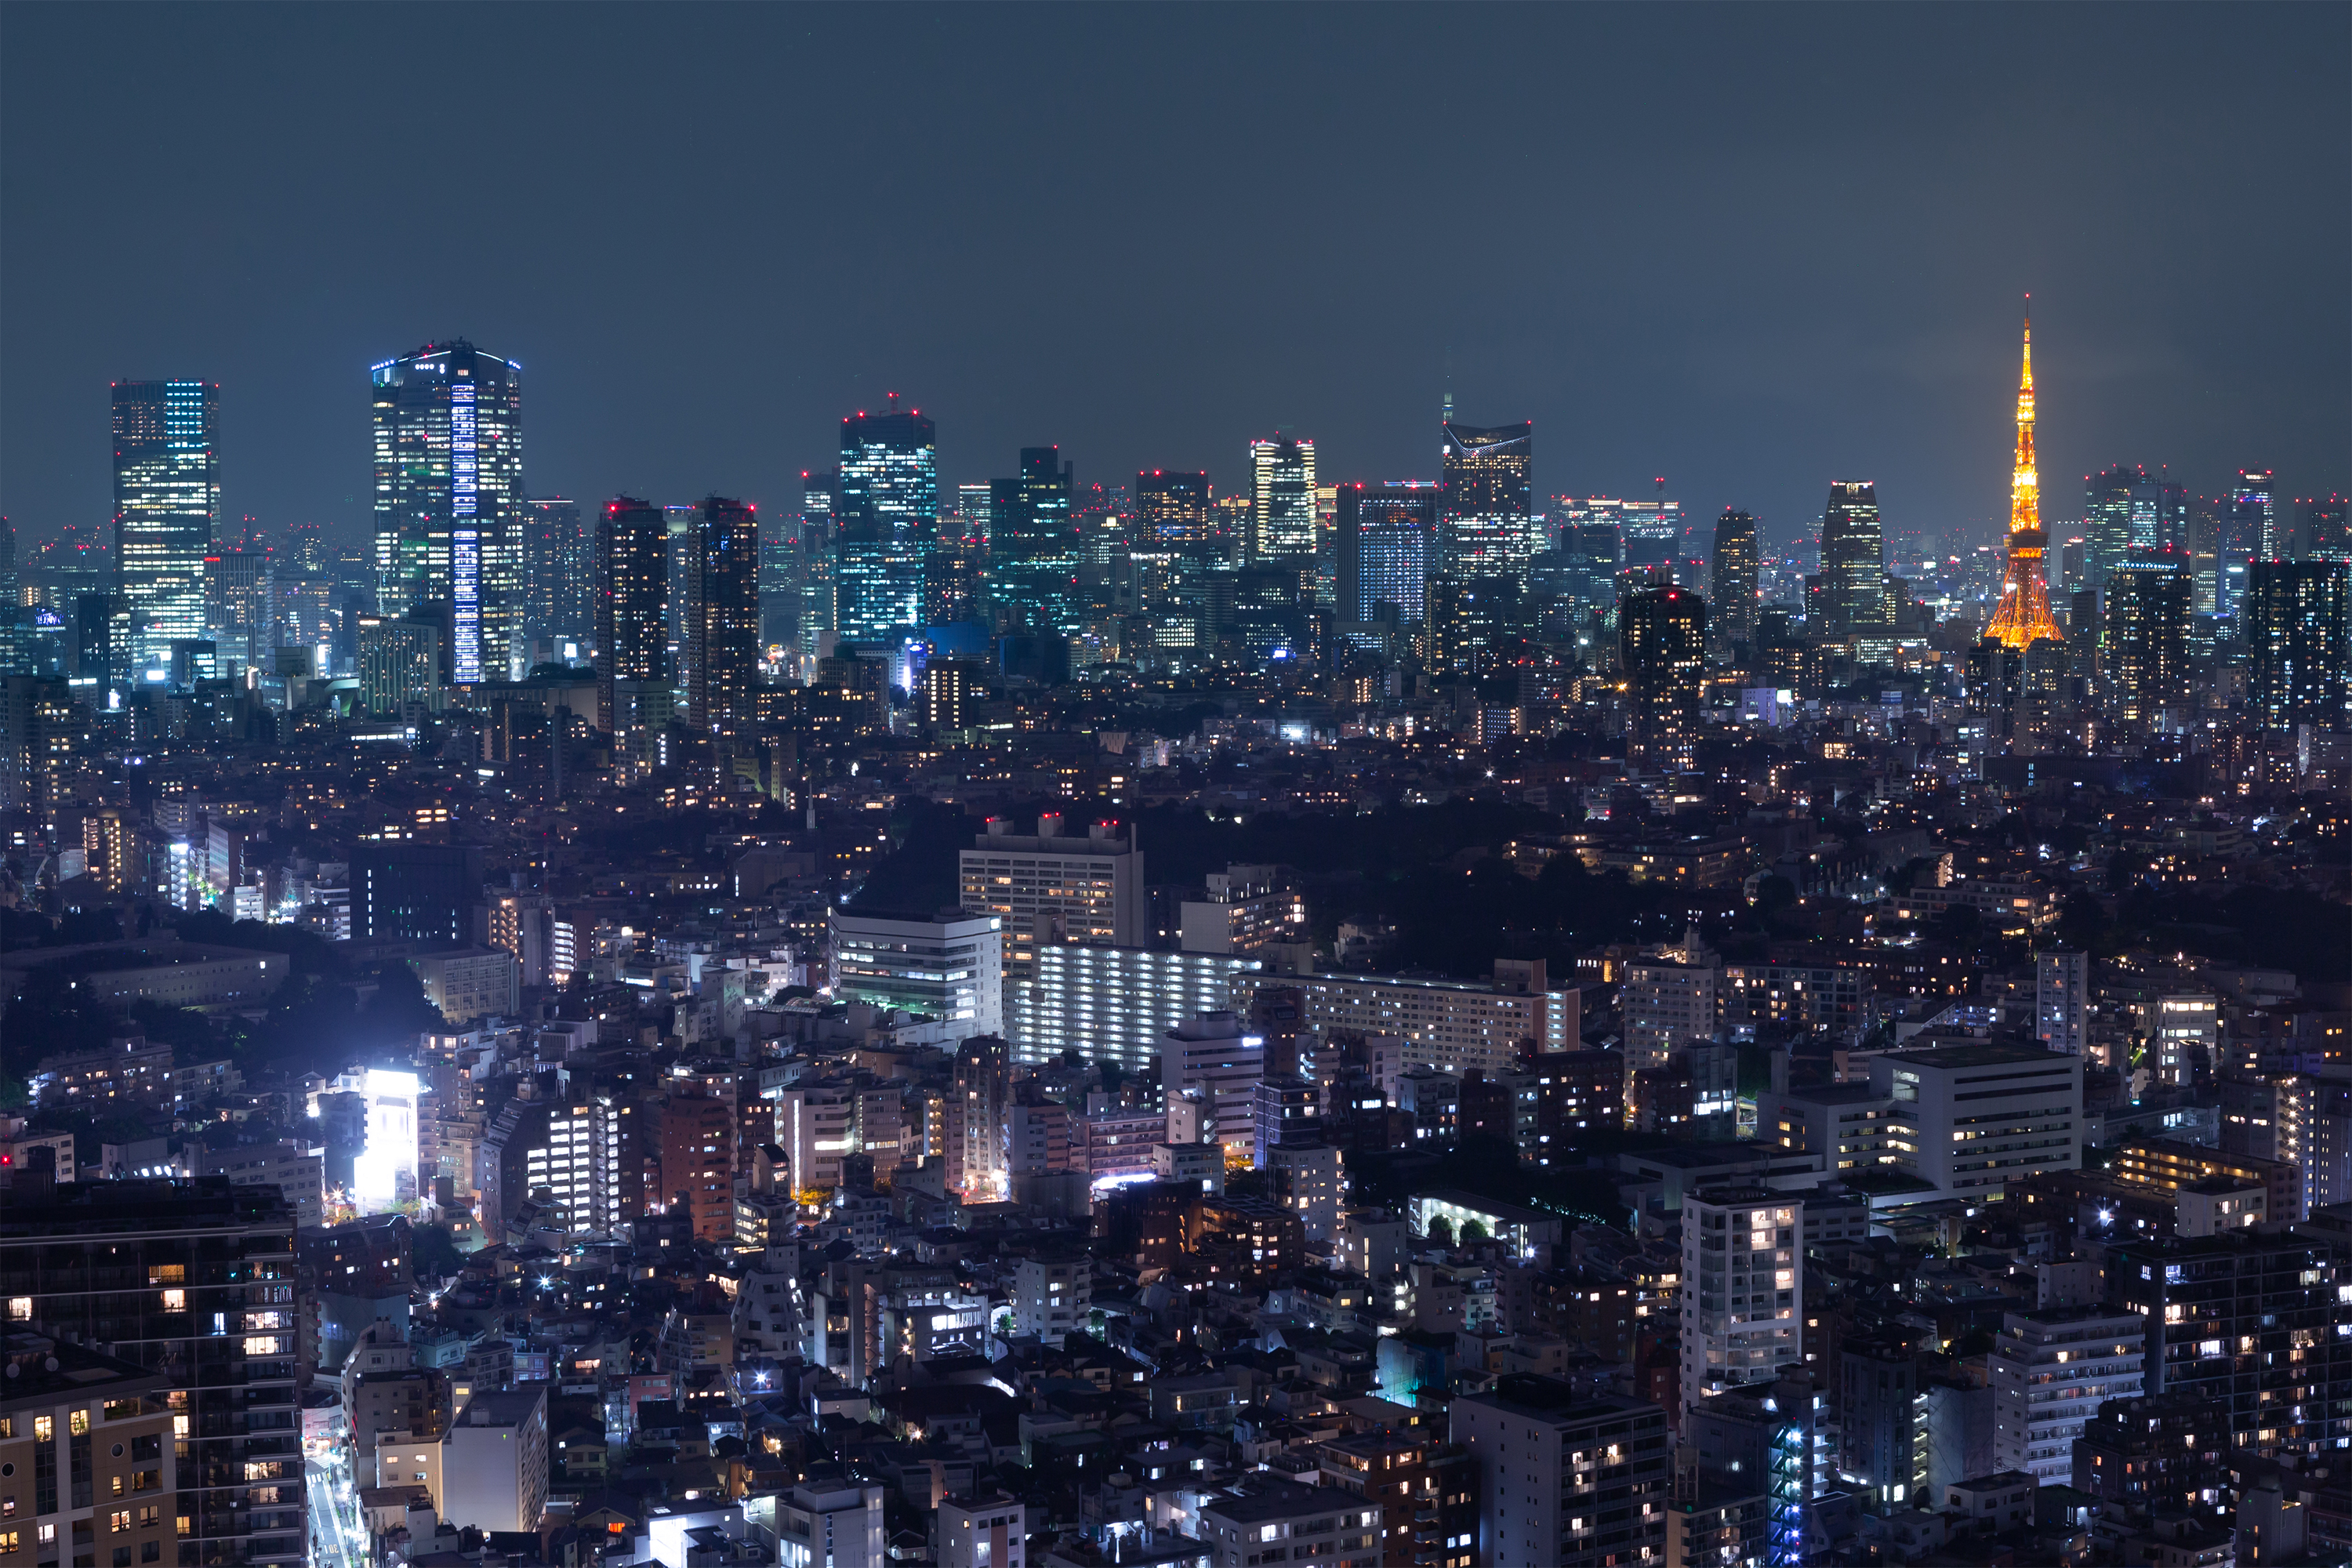 東京タワーと夜景04 無料の高画質フリー写真素材 イメージズラボ